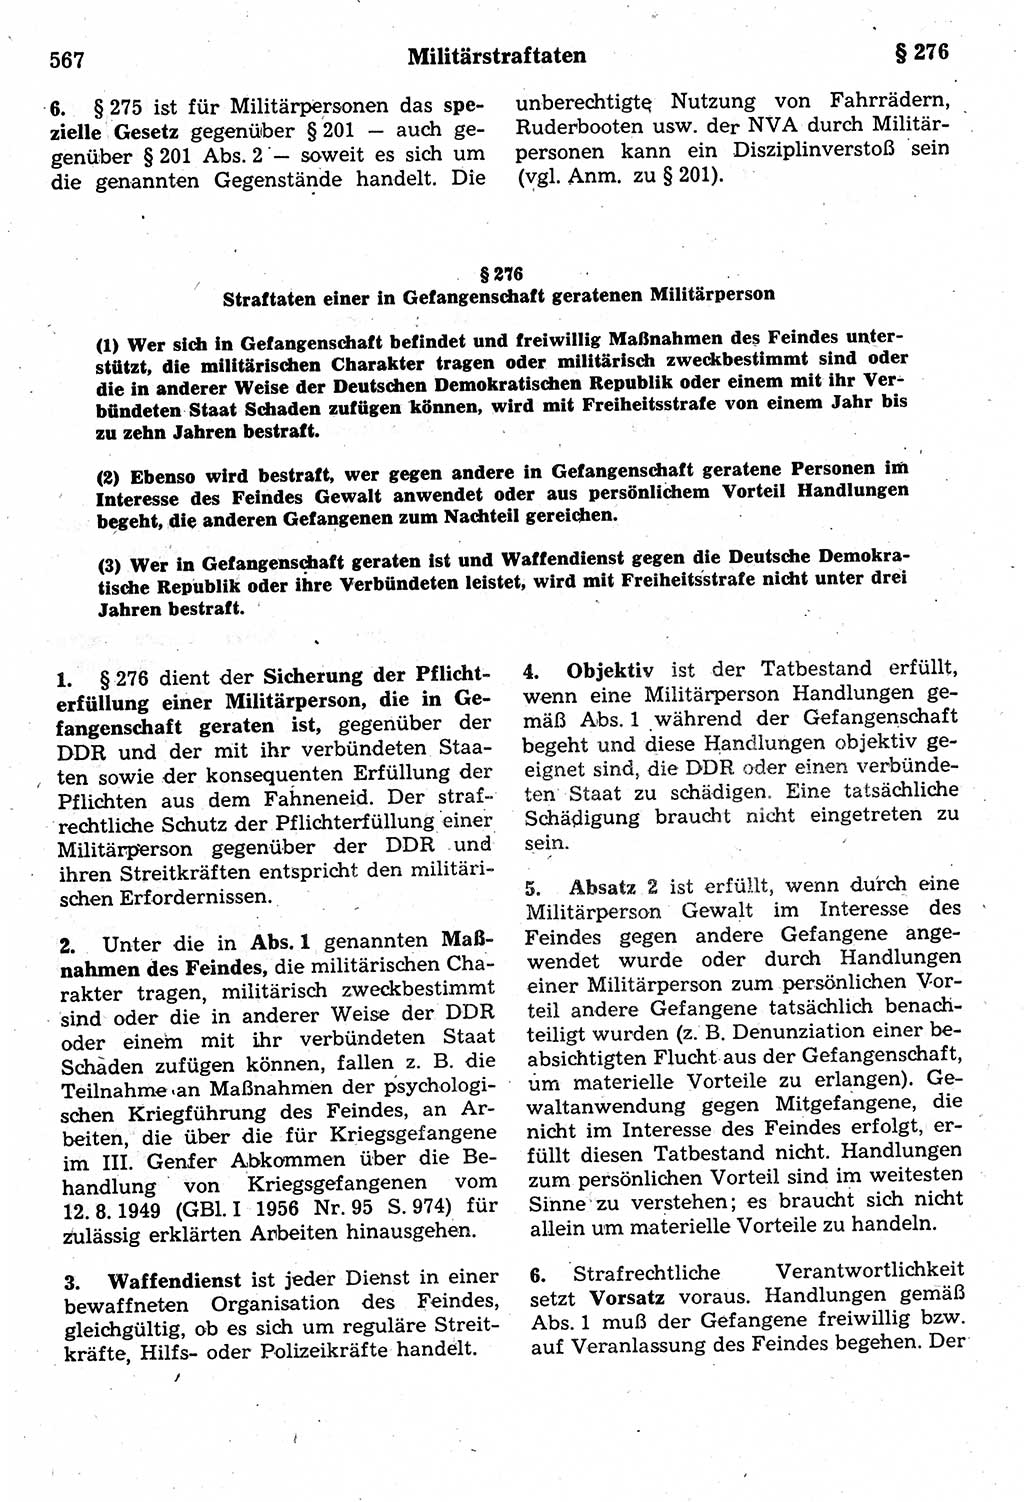 Strafrecht der Deutschen Demokratischen Republik (DDR), Kommentar zum Strafgesetzbuch (StGB) 1987, Seite 567 (Strafr. DDR Komm. StGB 1987, S. 567)